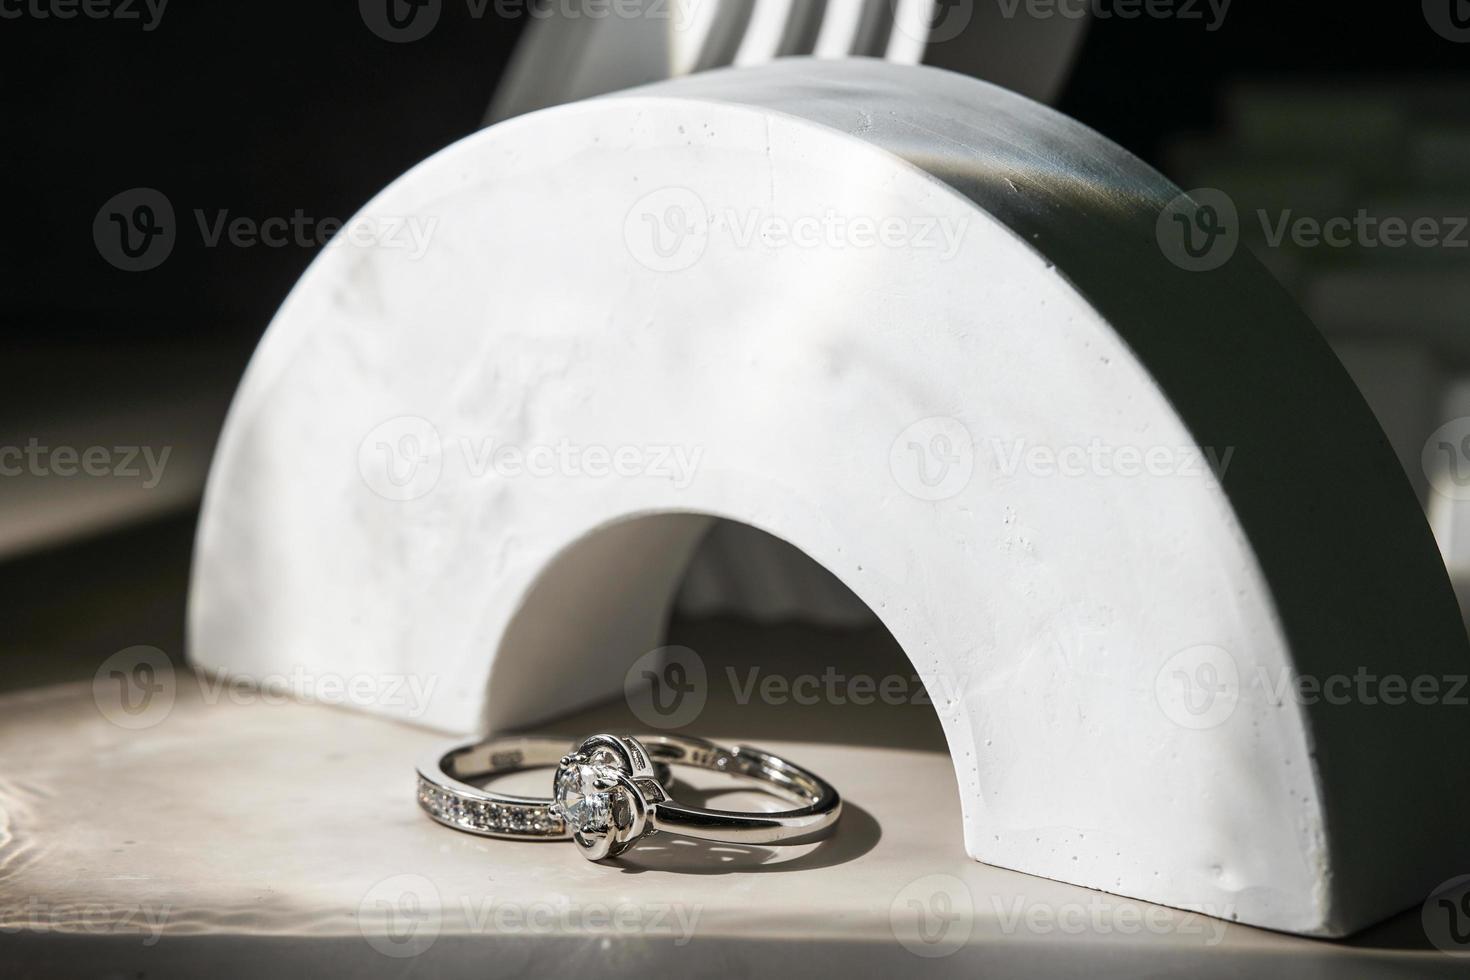 cerca del anillo de diamantes de compromiso. concepto de amor y boda. foto